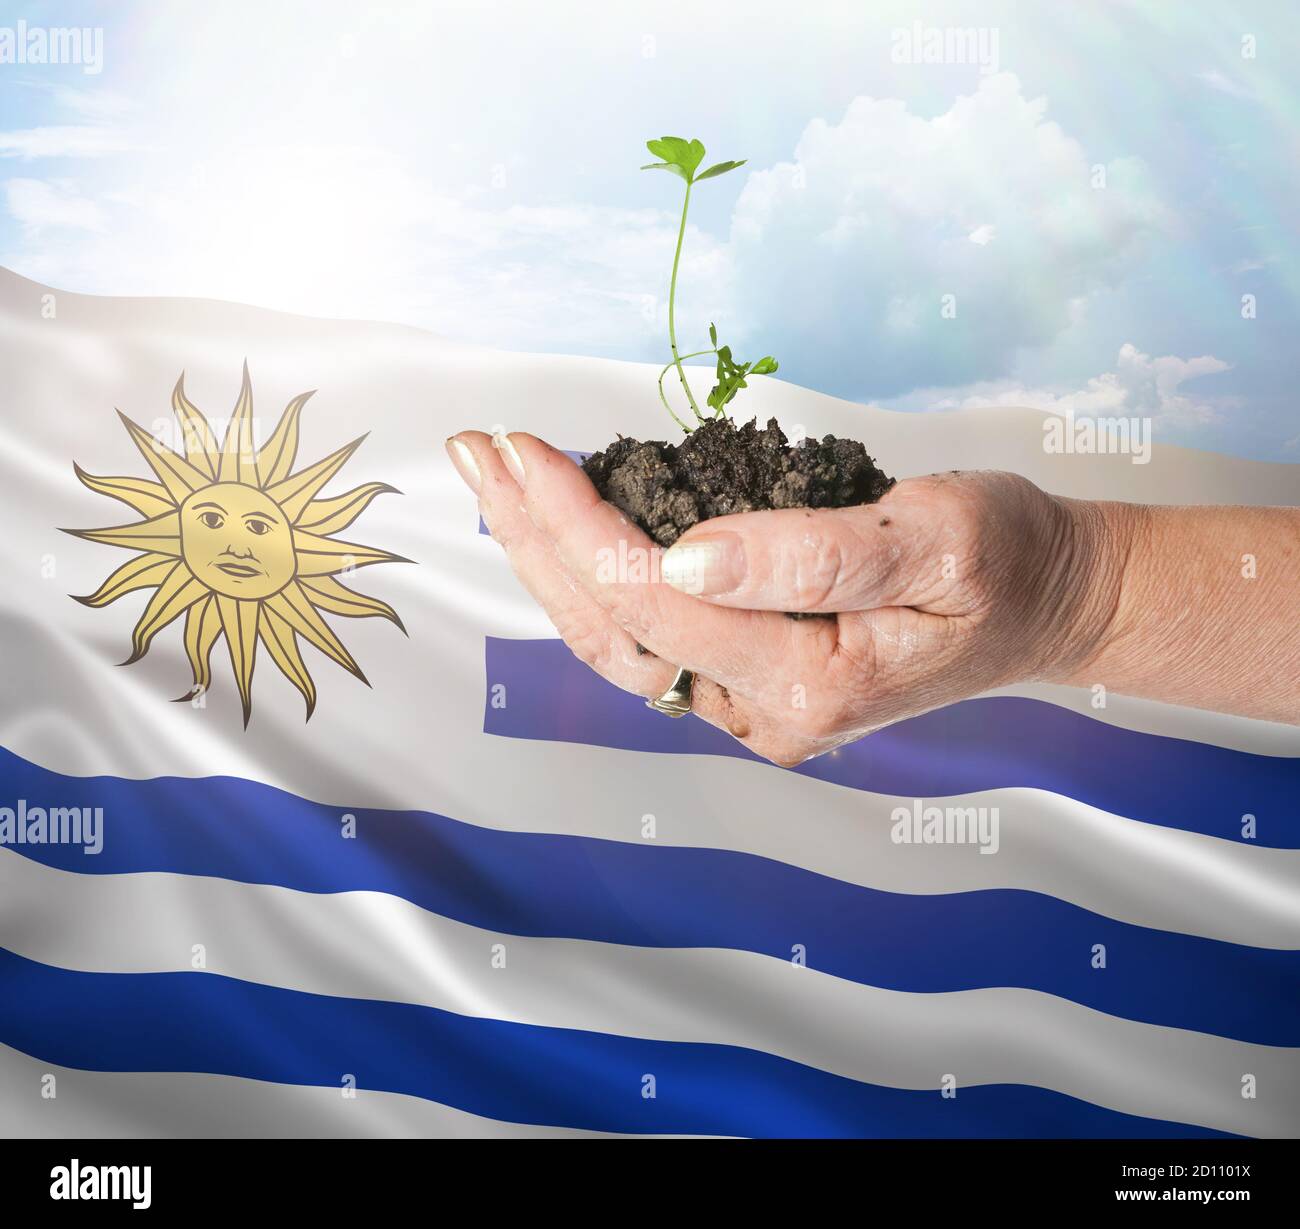 Uruguay crecimiento y nuevo comienzo. Concepto de energía renovable verde y ecología. Mano sosteniendo planta joven. Foto de stock